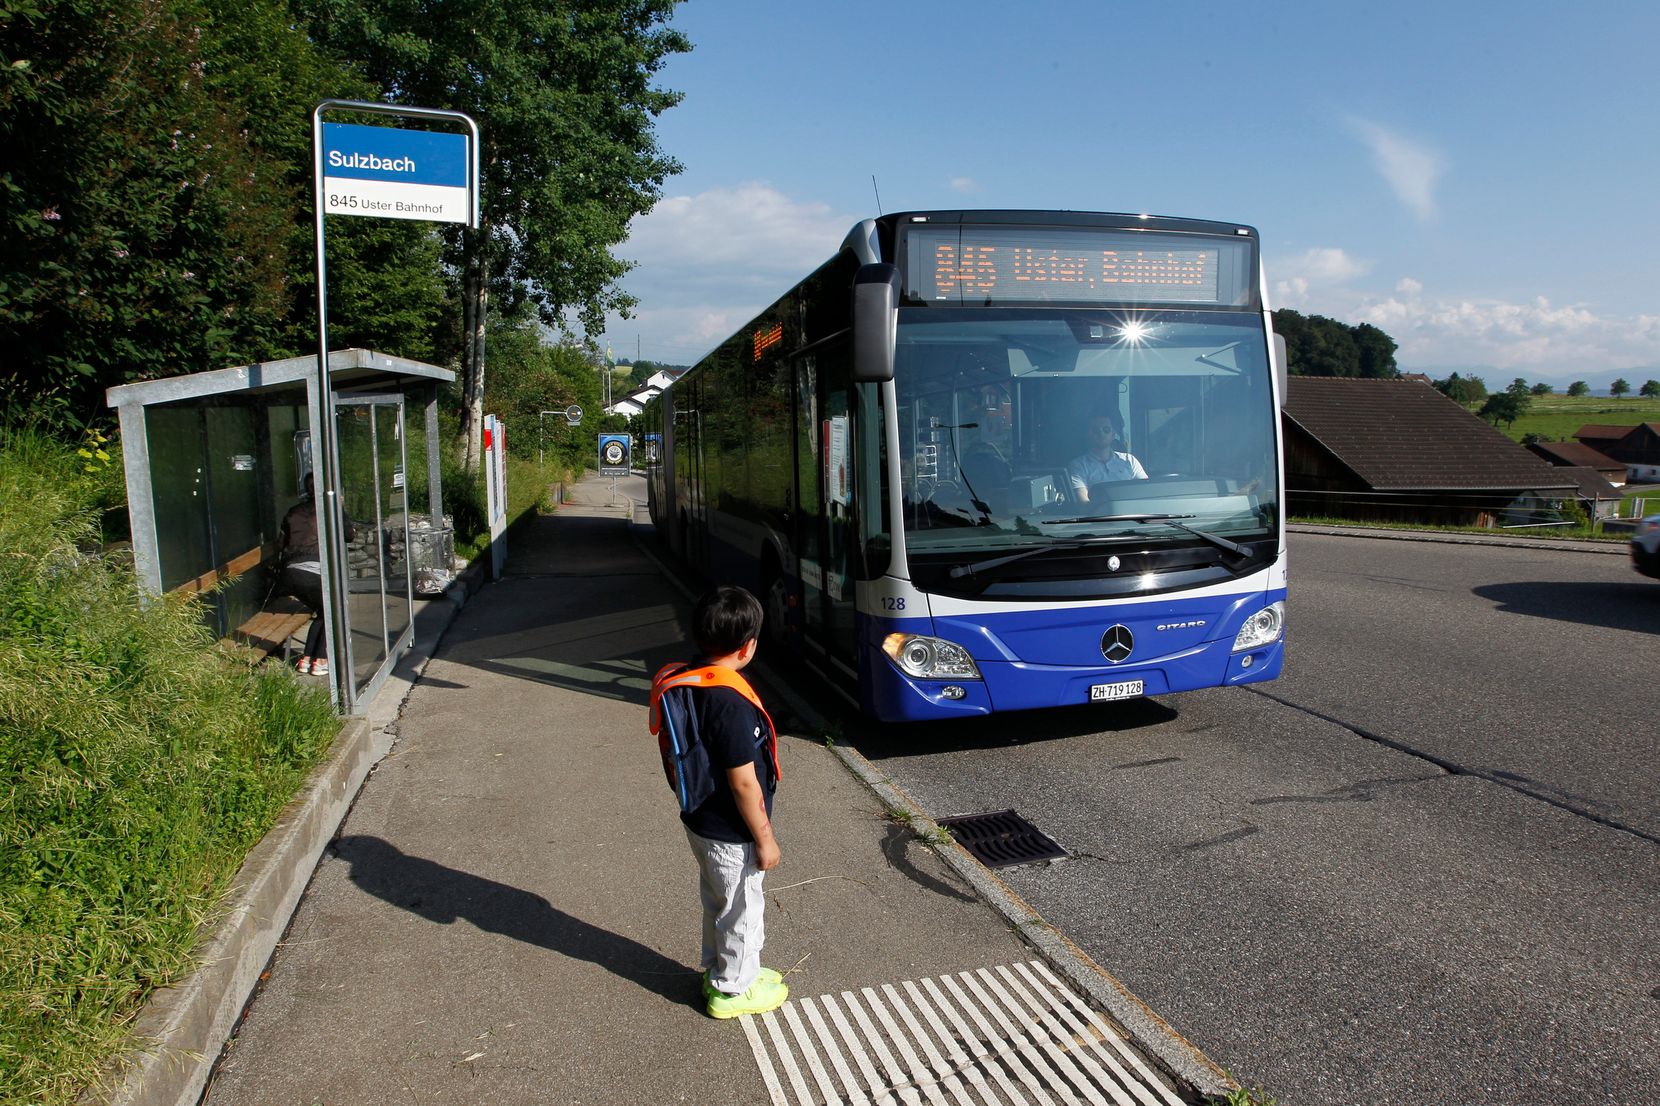 Man sieht die Bushaltestelle Sulzbach in Uster, wo ein Kind auf den anfahrenden Bus wartet.